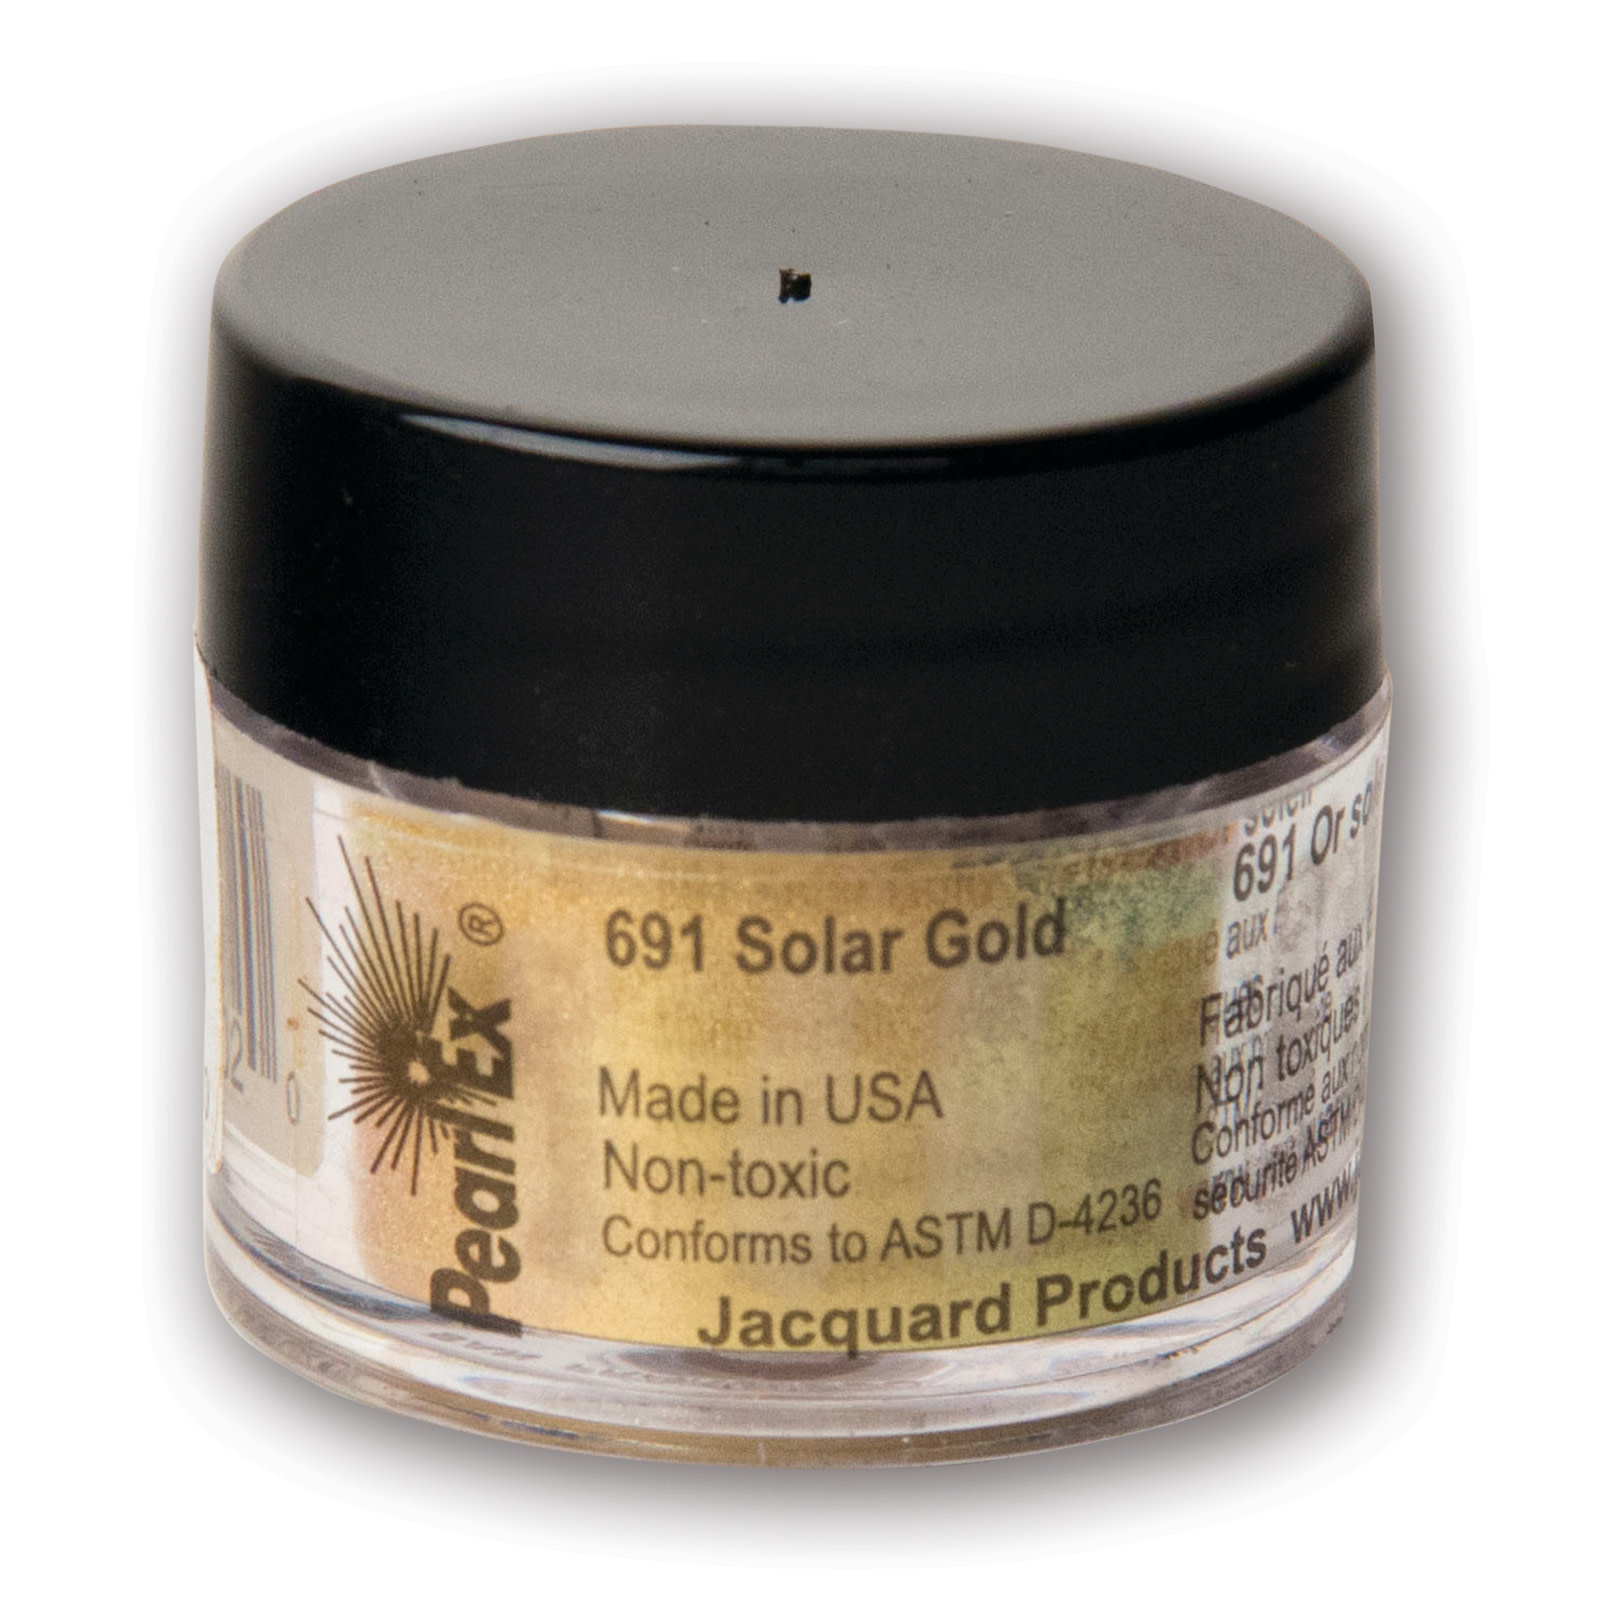 Jacquard Pearl Ex Powdered Pigments, 3g Jars, Solar Gold